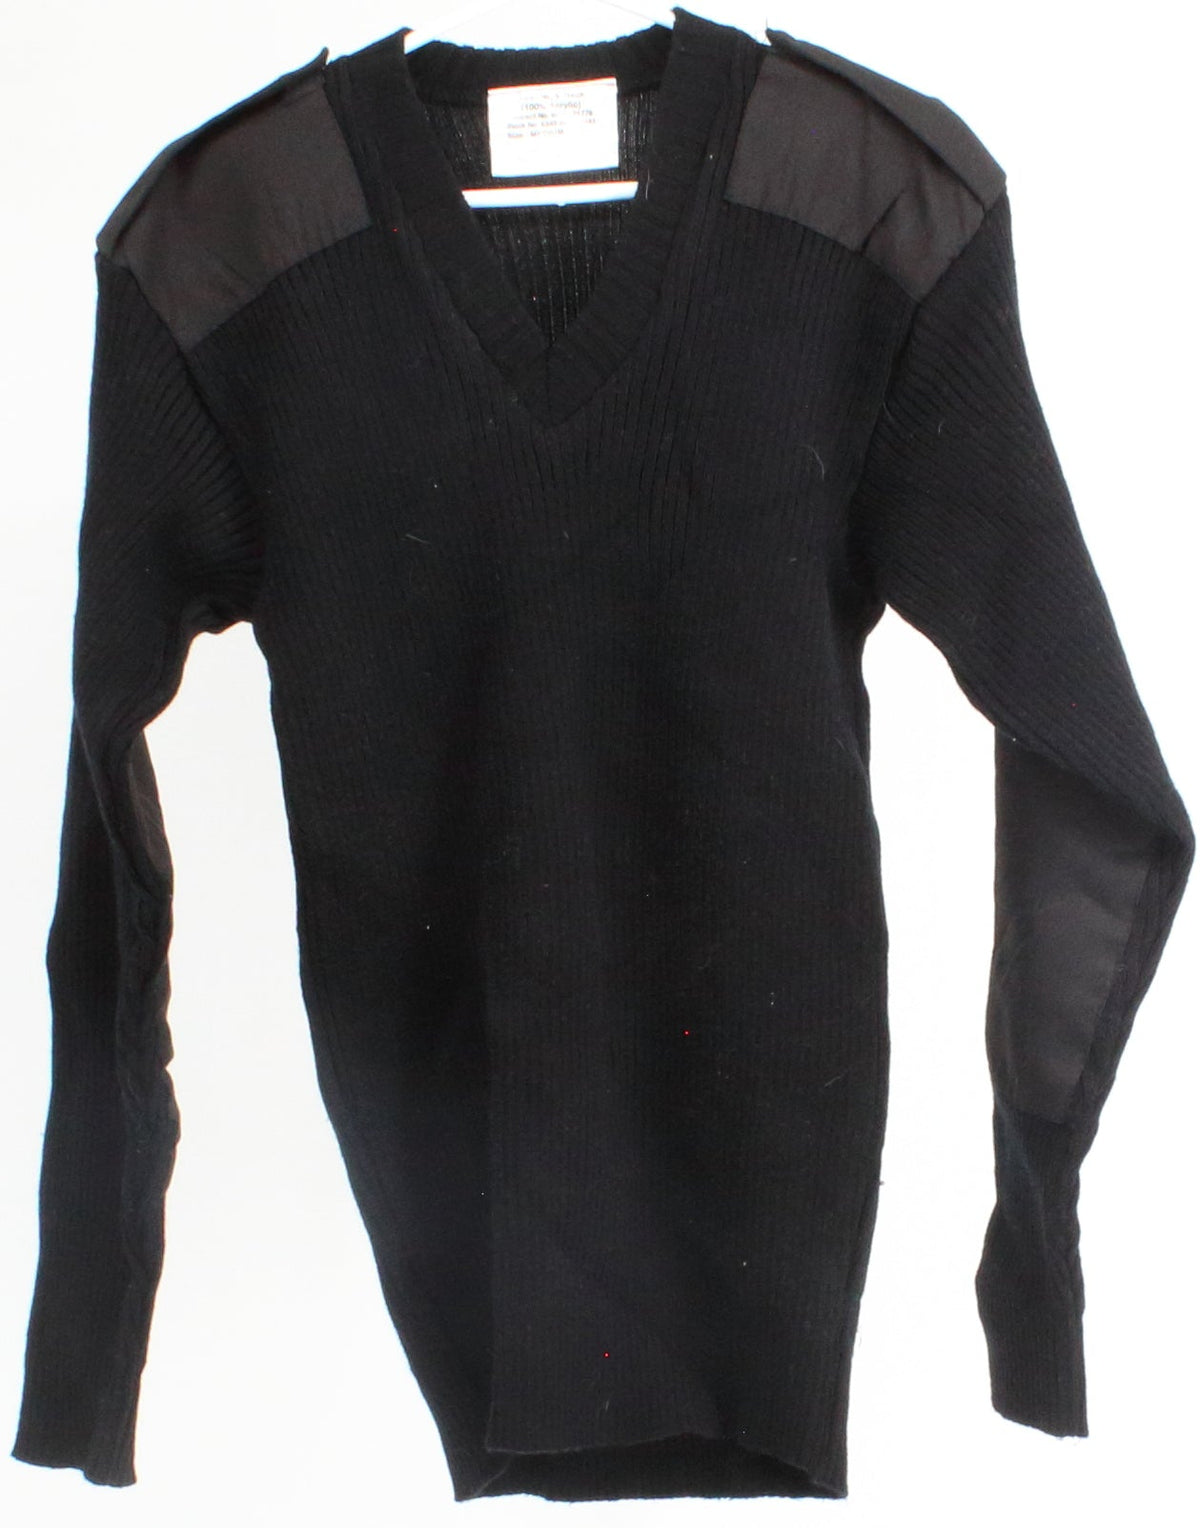 Black V-Neck Shoulder Patch Sweater